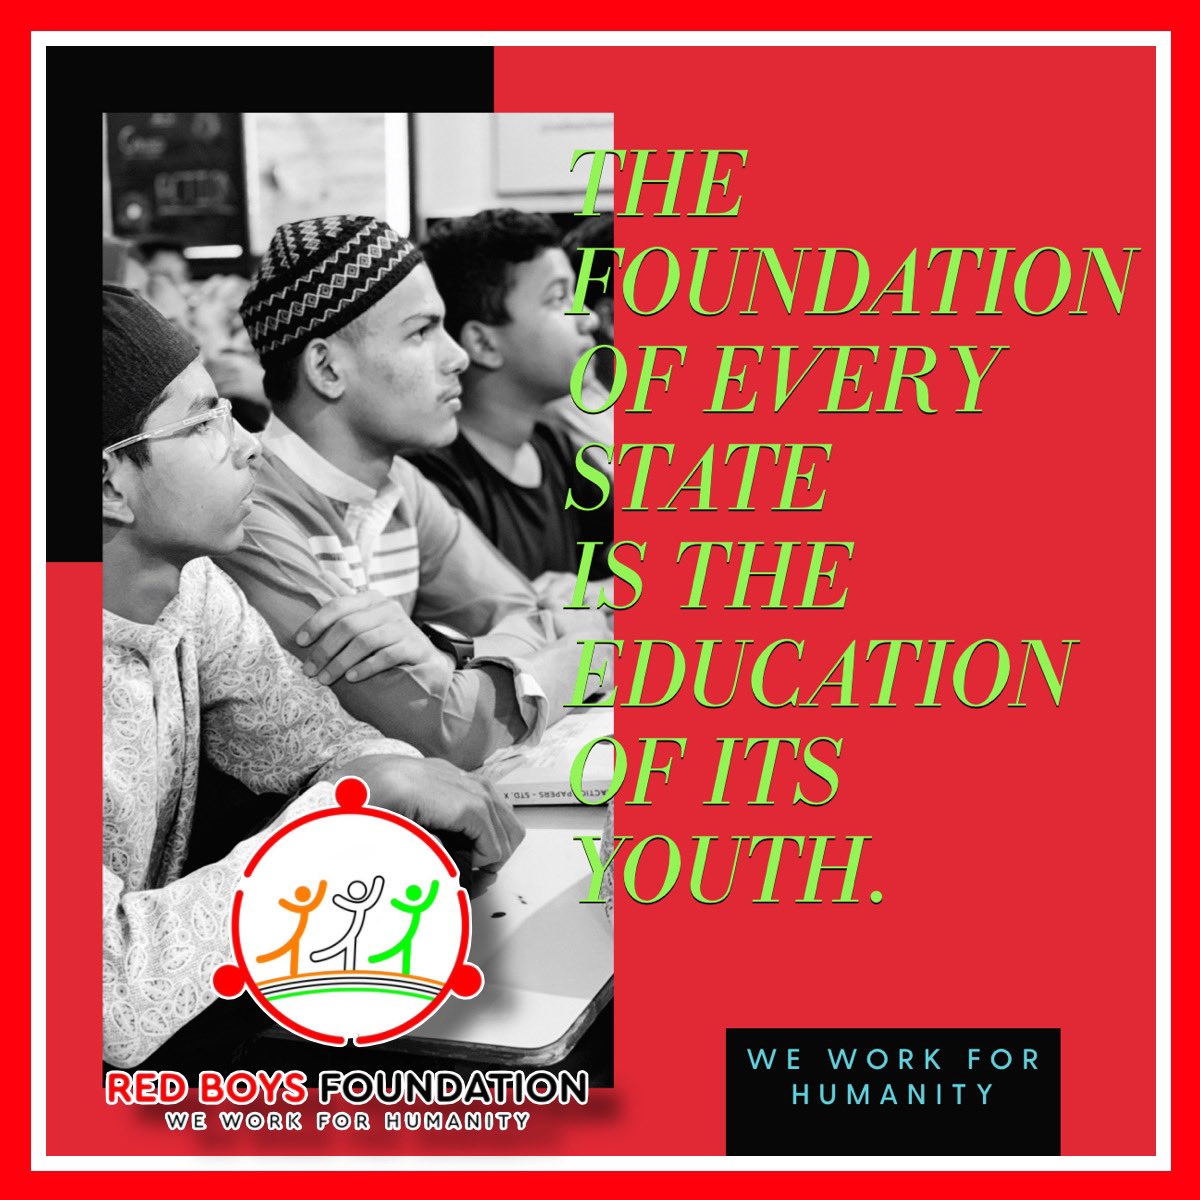 THE FOUNDATION OF EVERY STATE
IS THE EDUCATION OF ITS YOUTH.
#educationforlife #educationalequity #education #mumbai #ngo #socialchange #community #india #redboysfoundation #csrindia